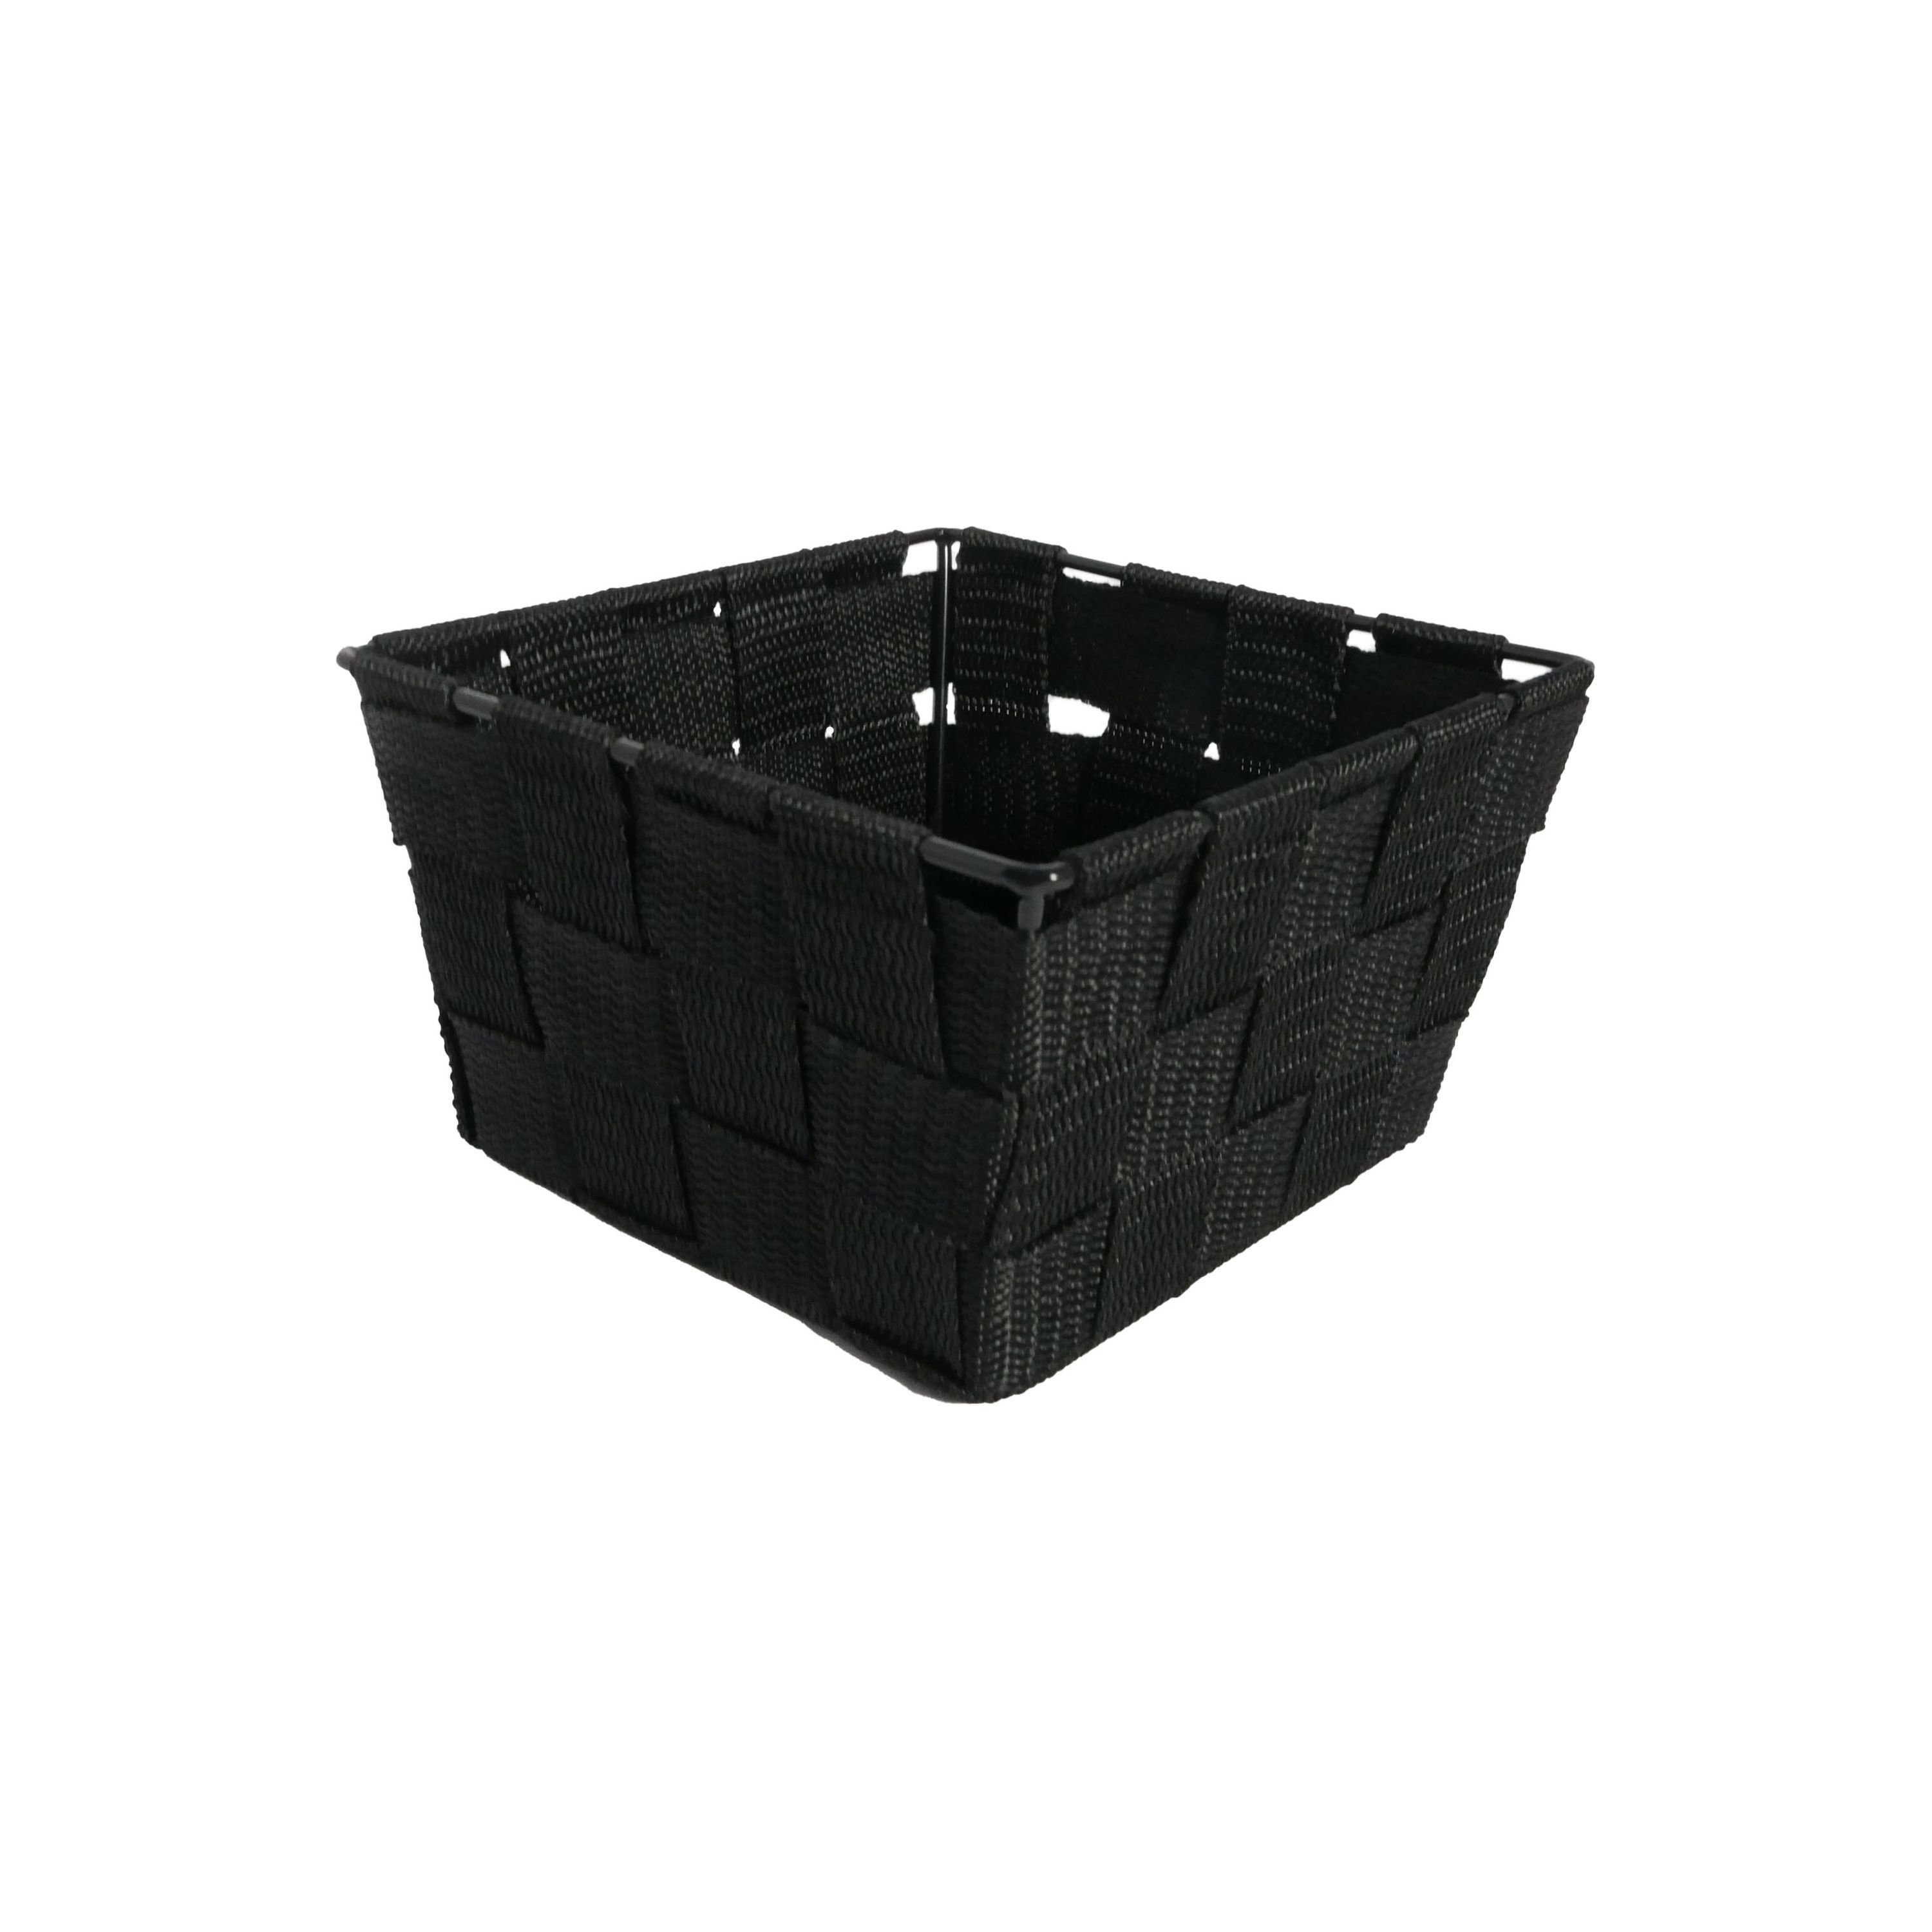 B&S Regalkorb Regalkorb schwarz Ordnungsbox quadatisch 15 x 15 cm